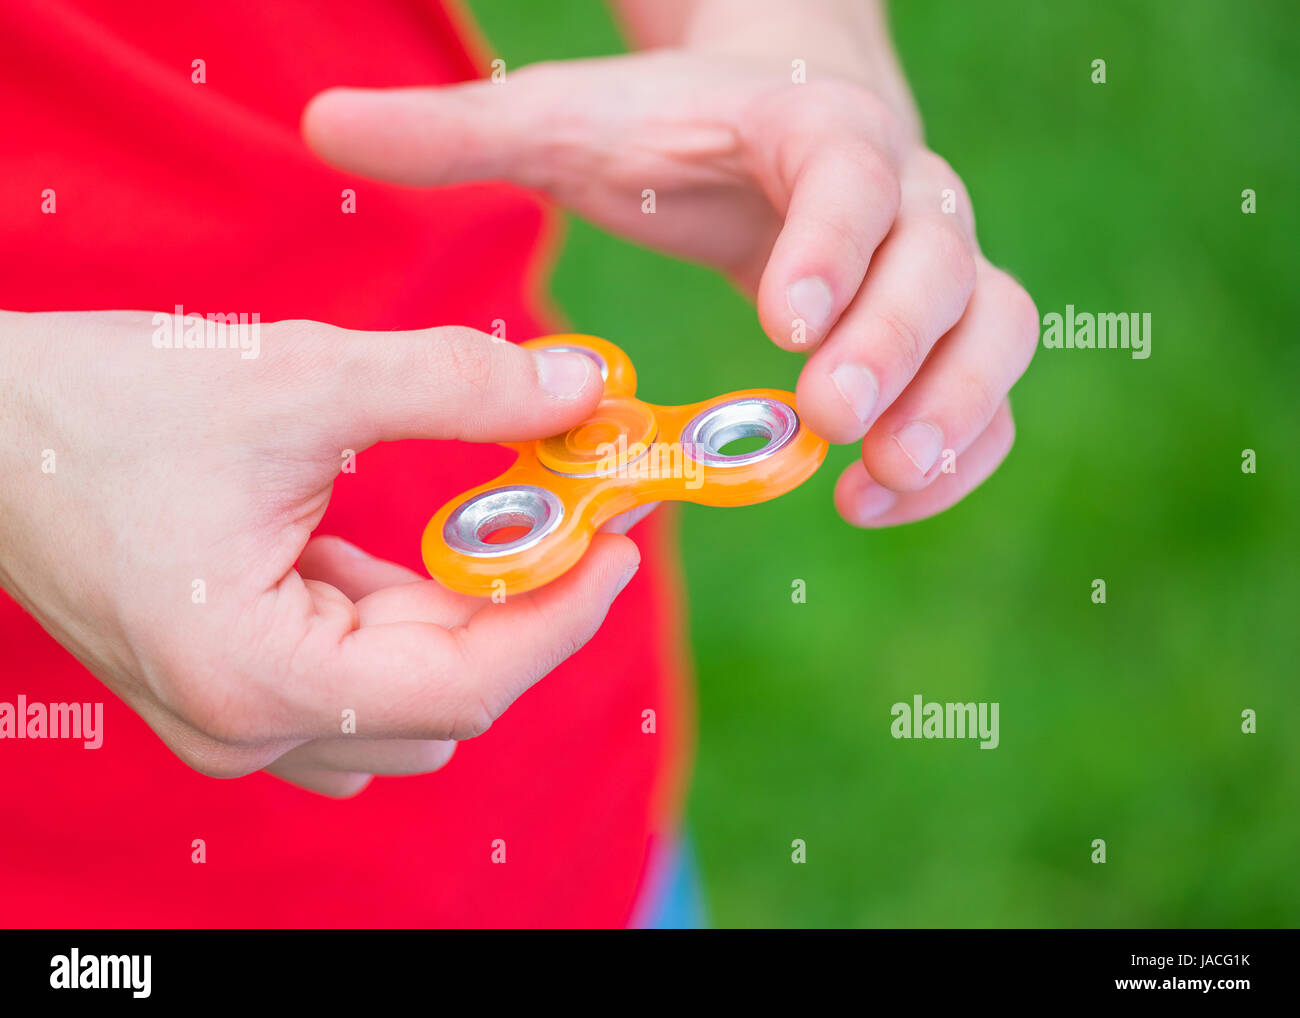 Mano con spinner toy Foto de stock